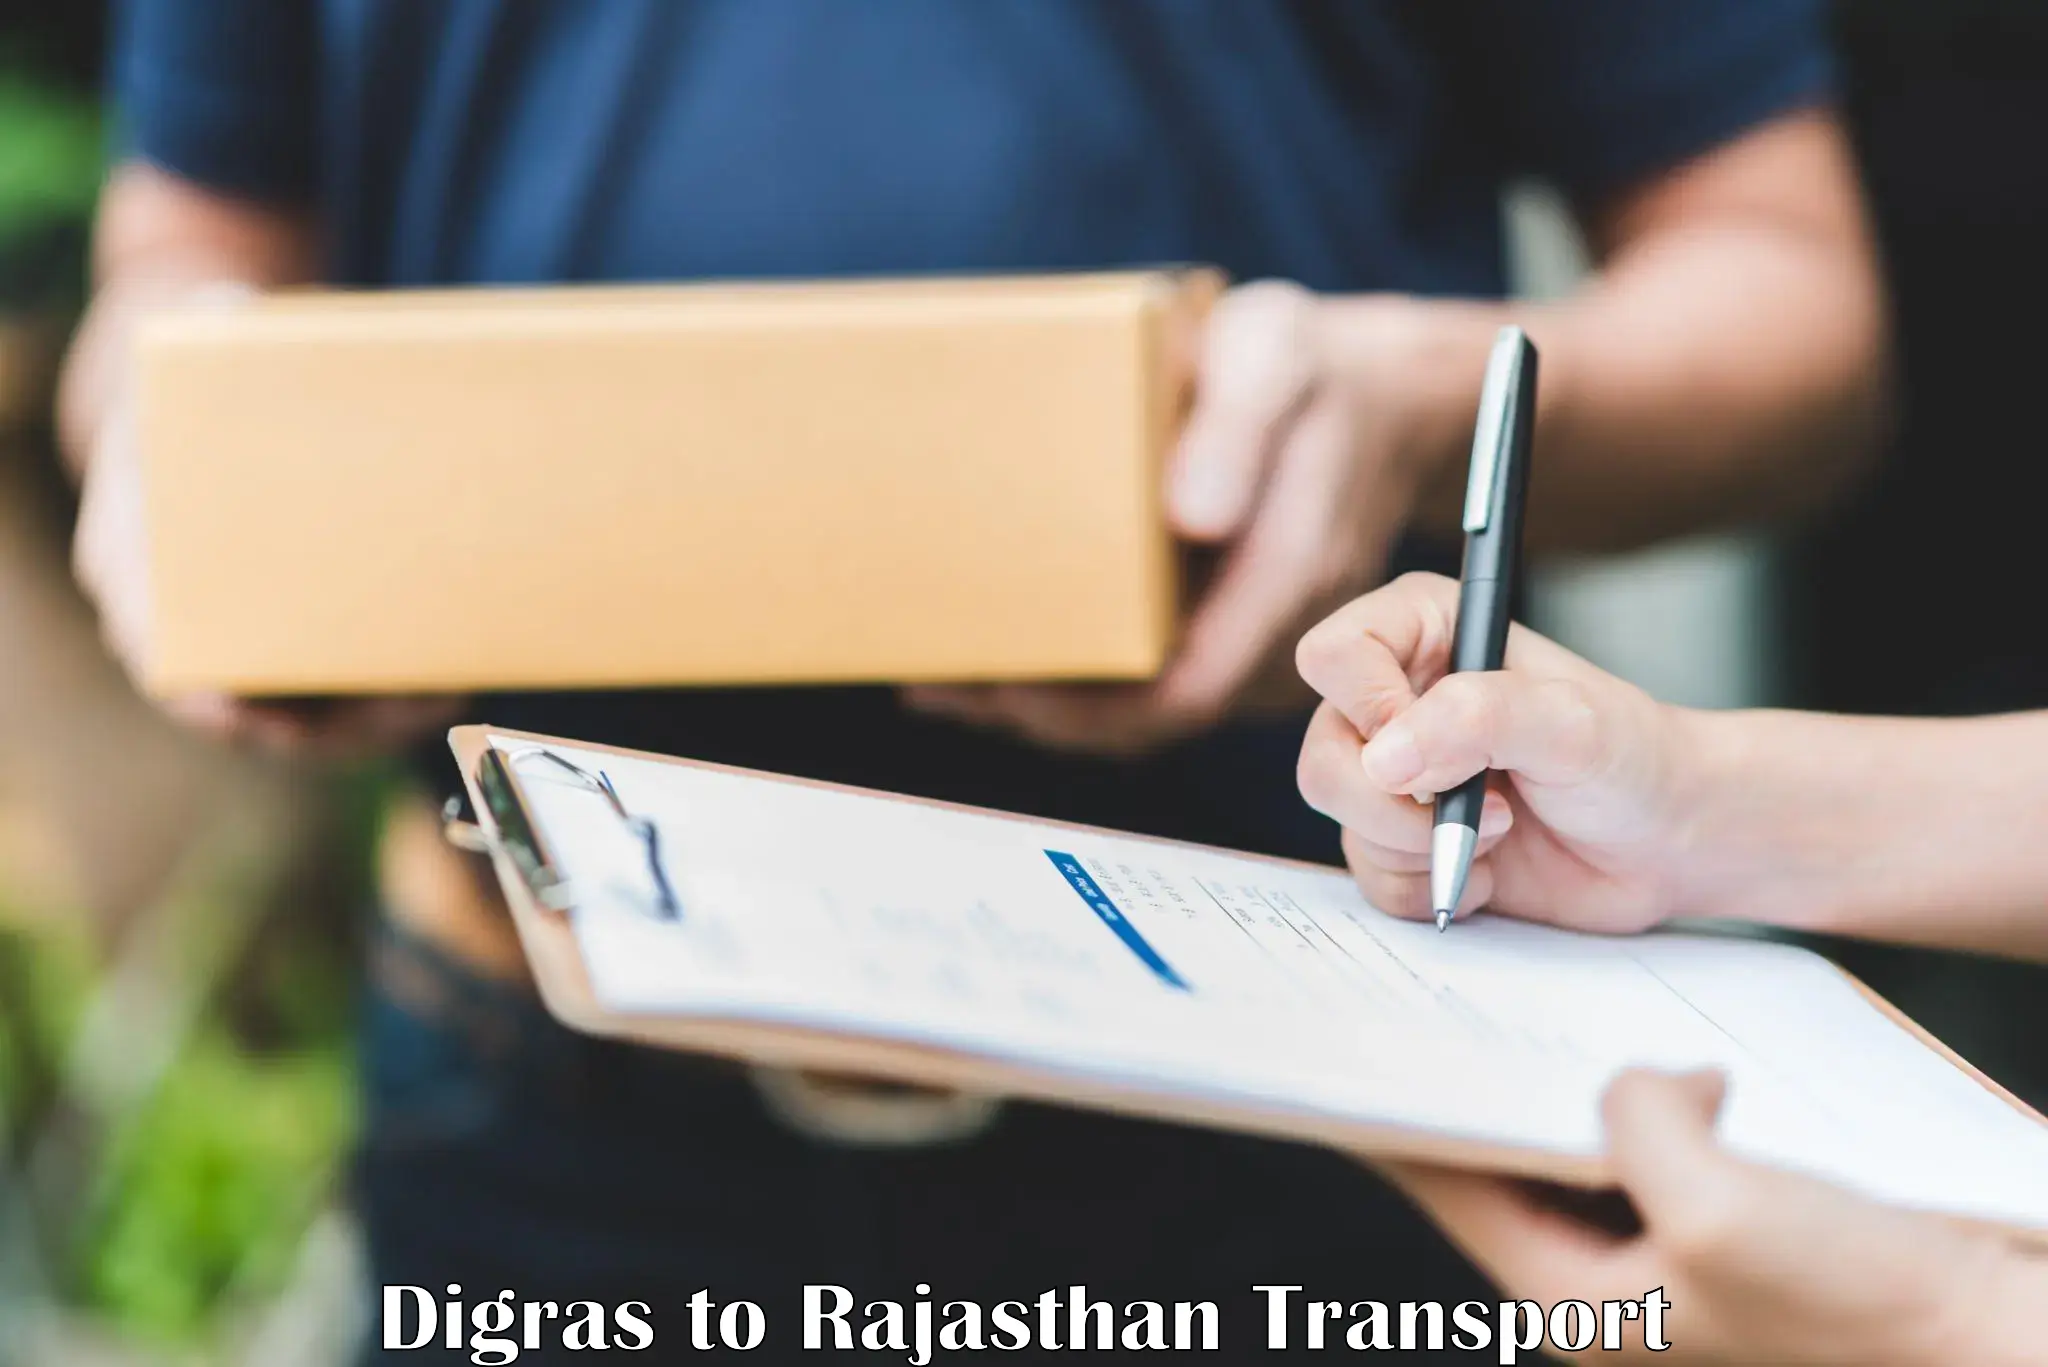 Online transport service Digras to Chittorgarh